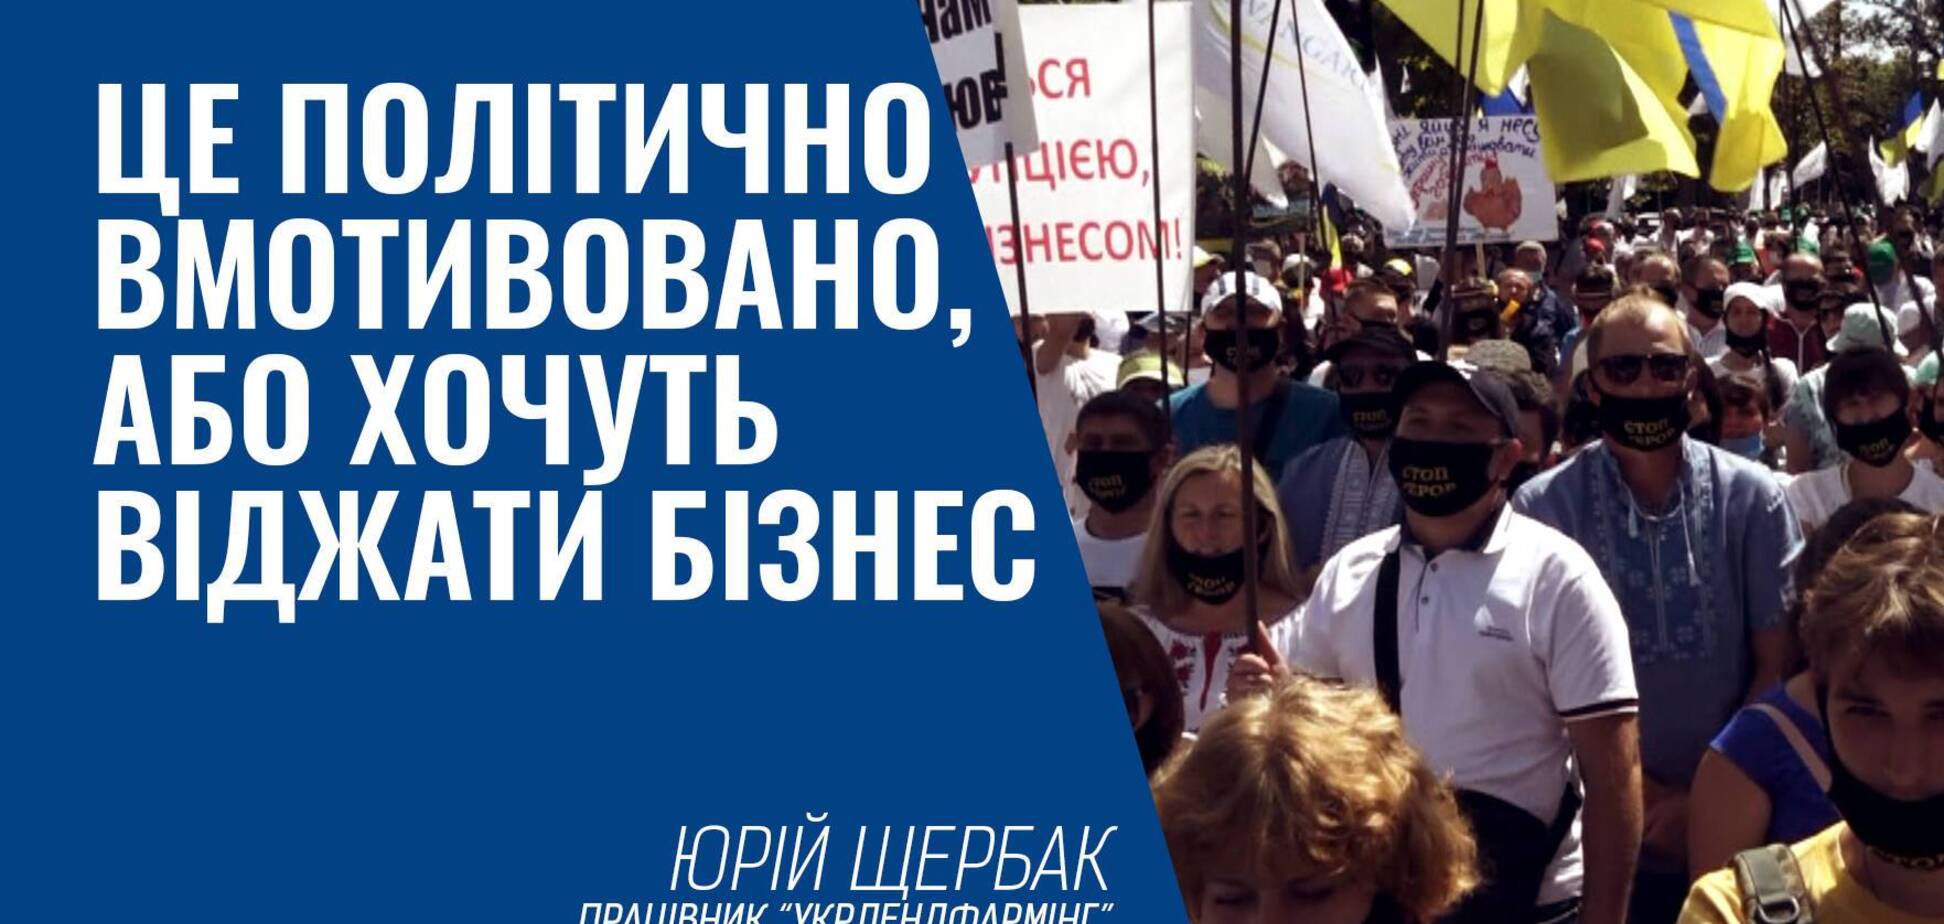 Працівники “Укрлендфармінг” закликають зупинити терор